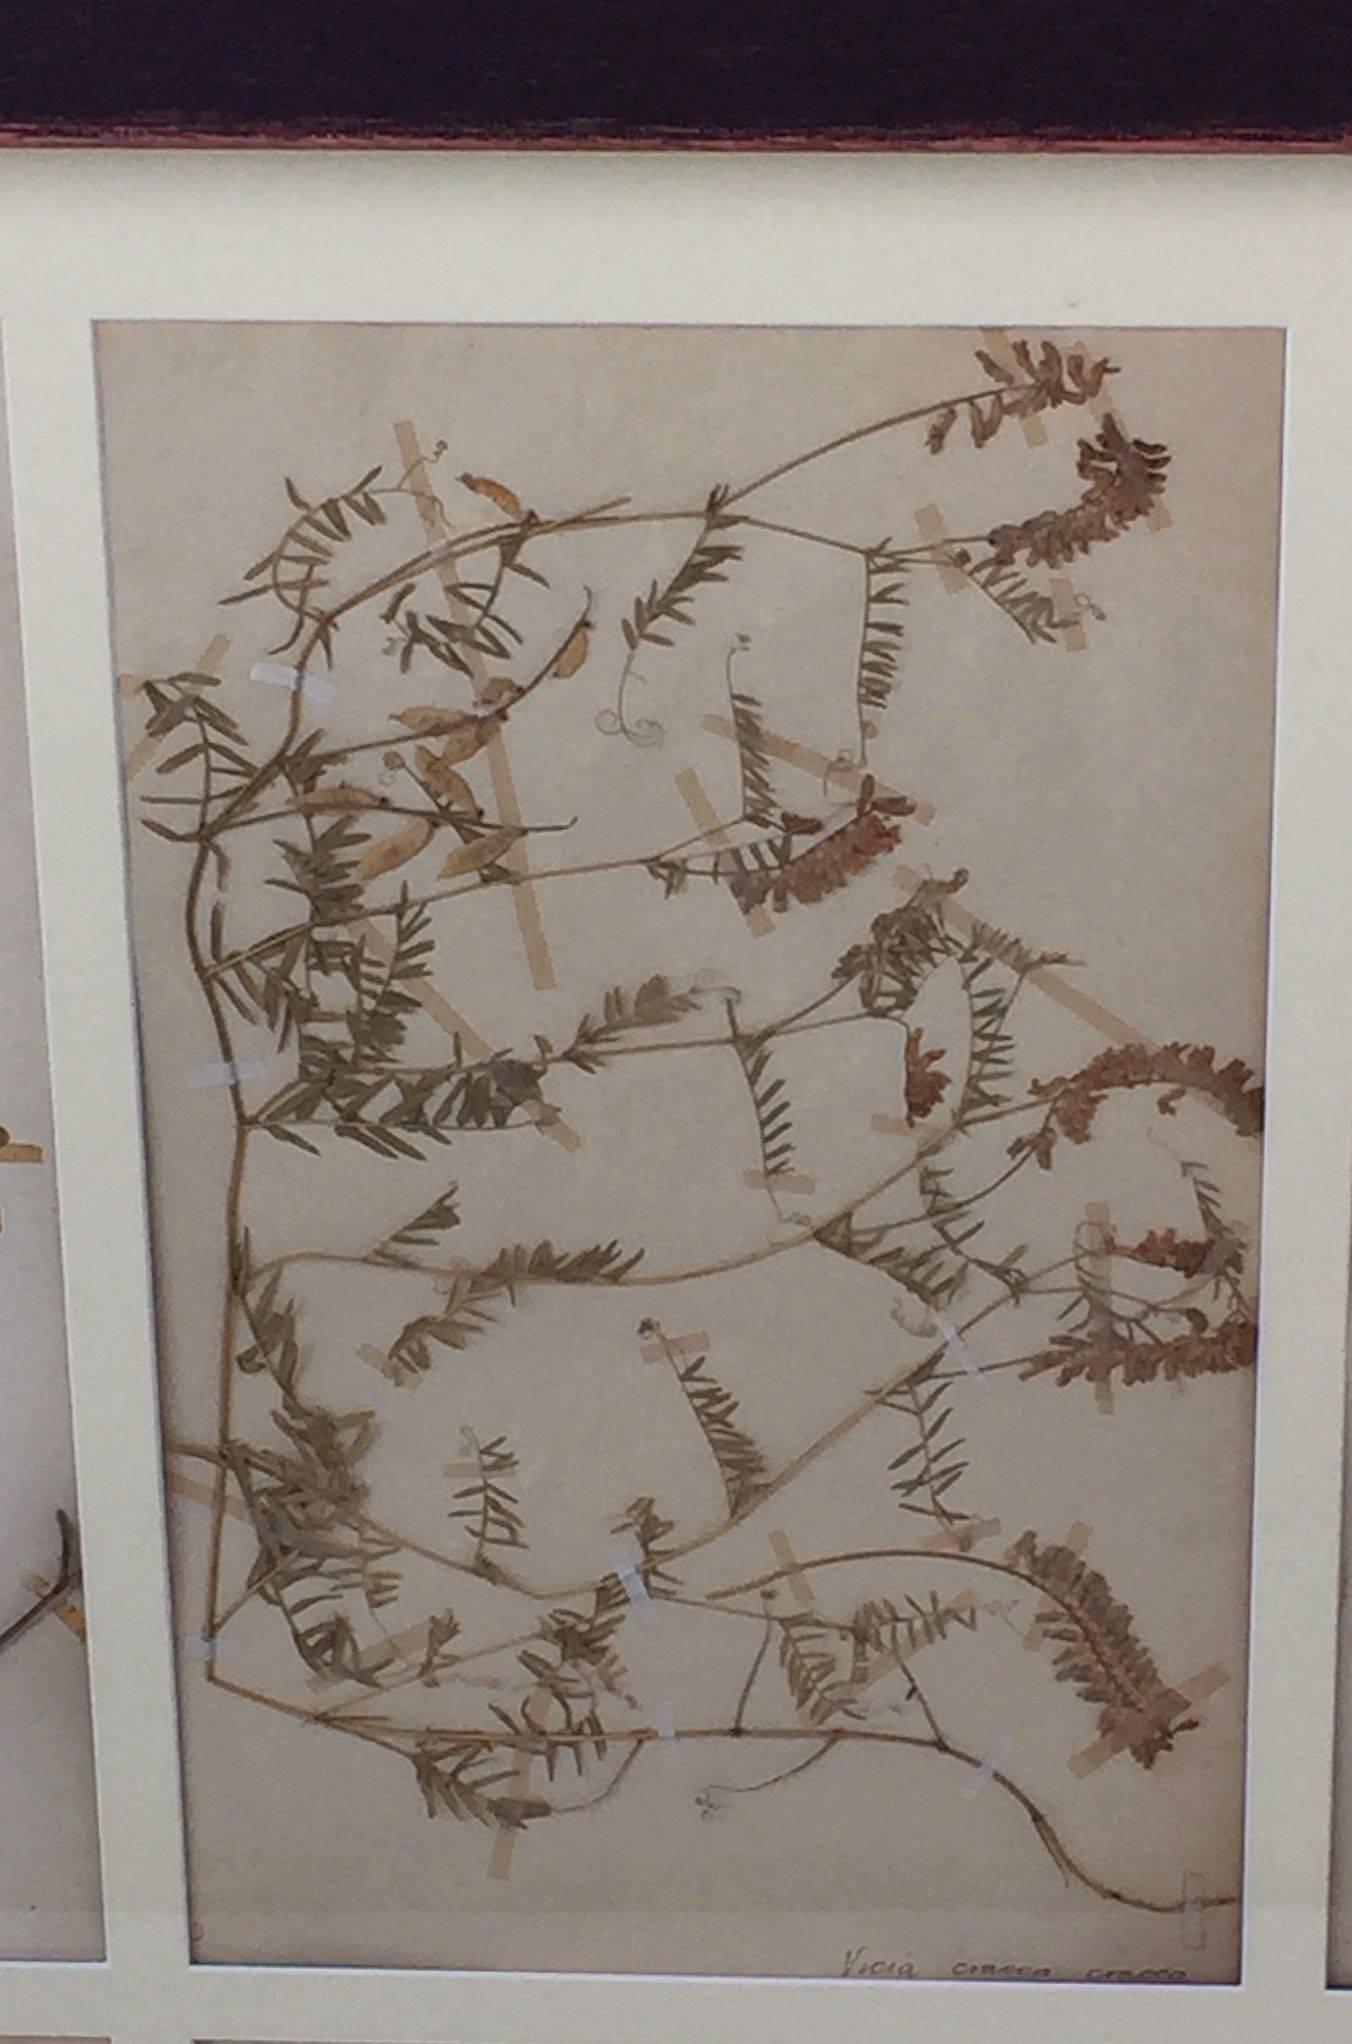 framed pressed botanicals